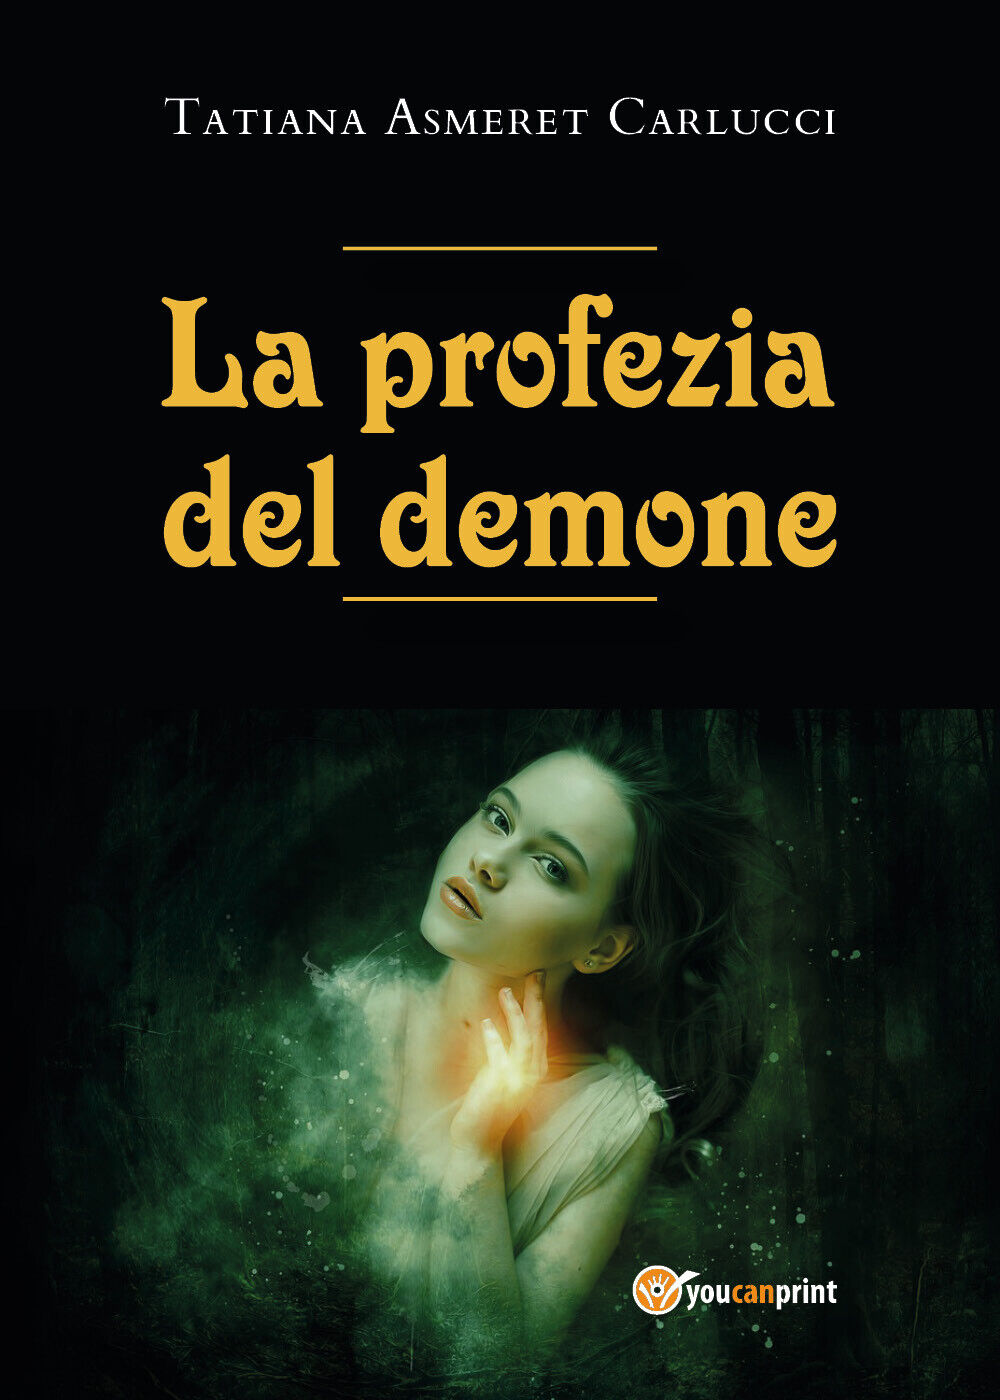 La profezia del demone di Tatiana Asmeret Carlucci,  2021,  Youcanprint